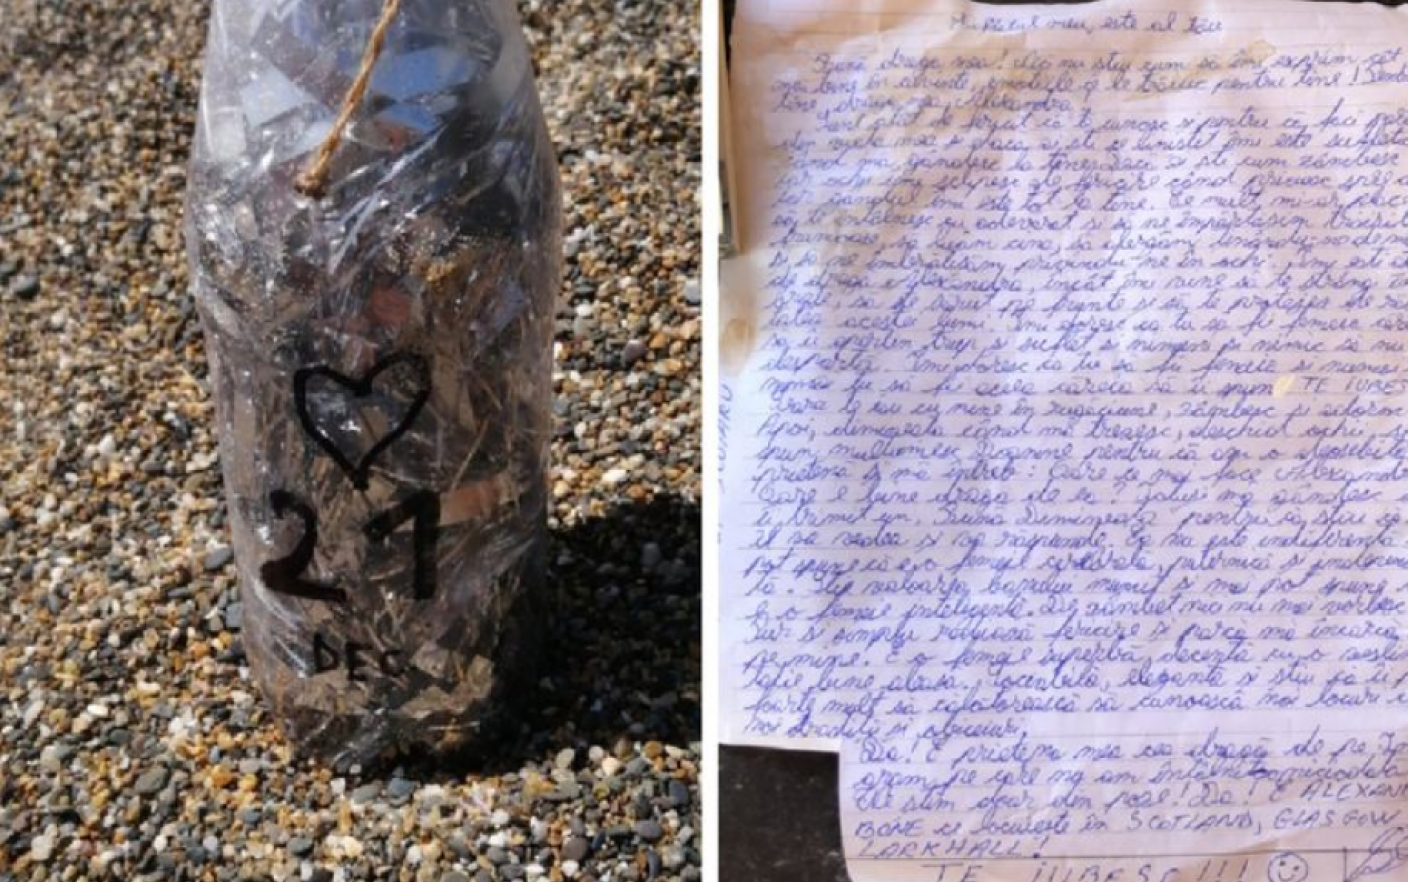 Scrisoare de dragoste scrisă în română, găsită într-o sticlă pe o plajă din Irlanda